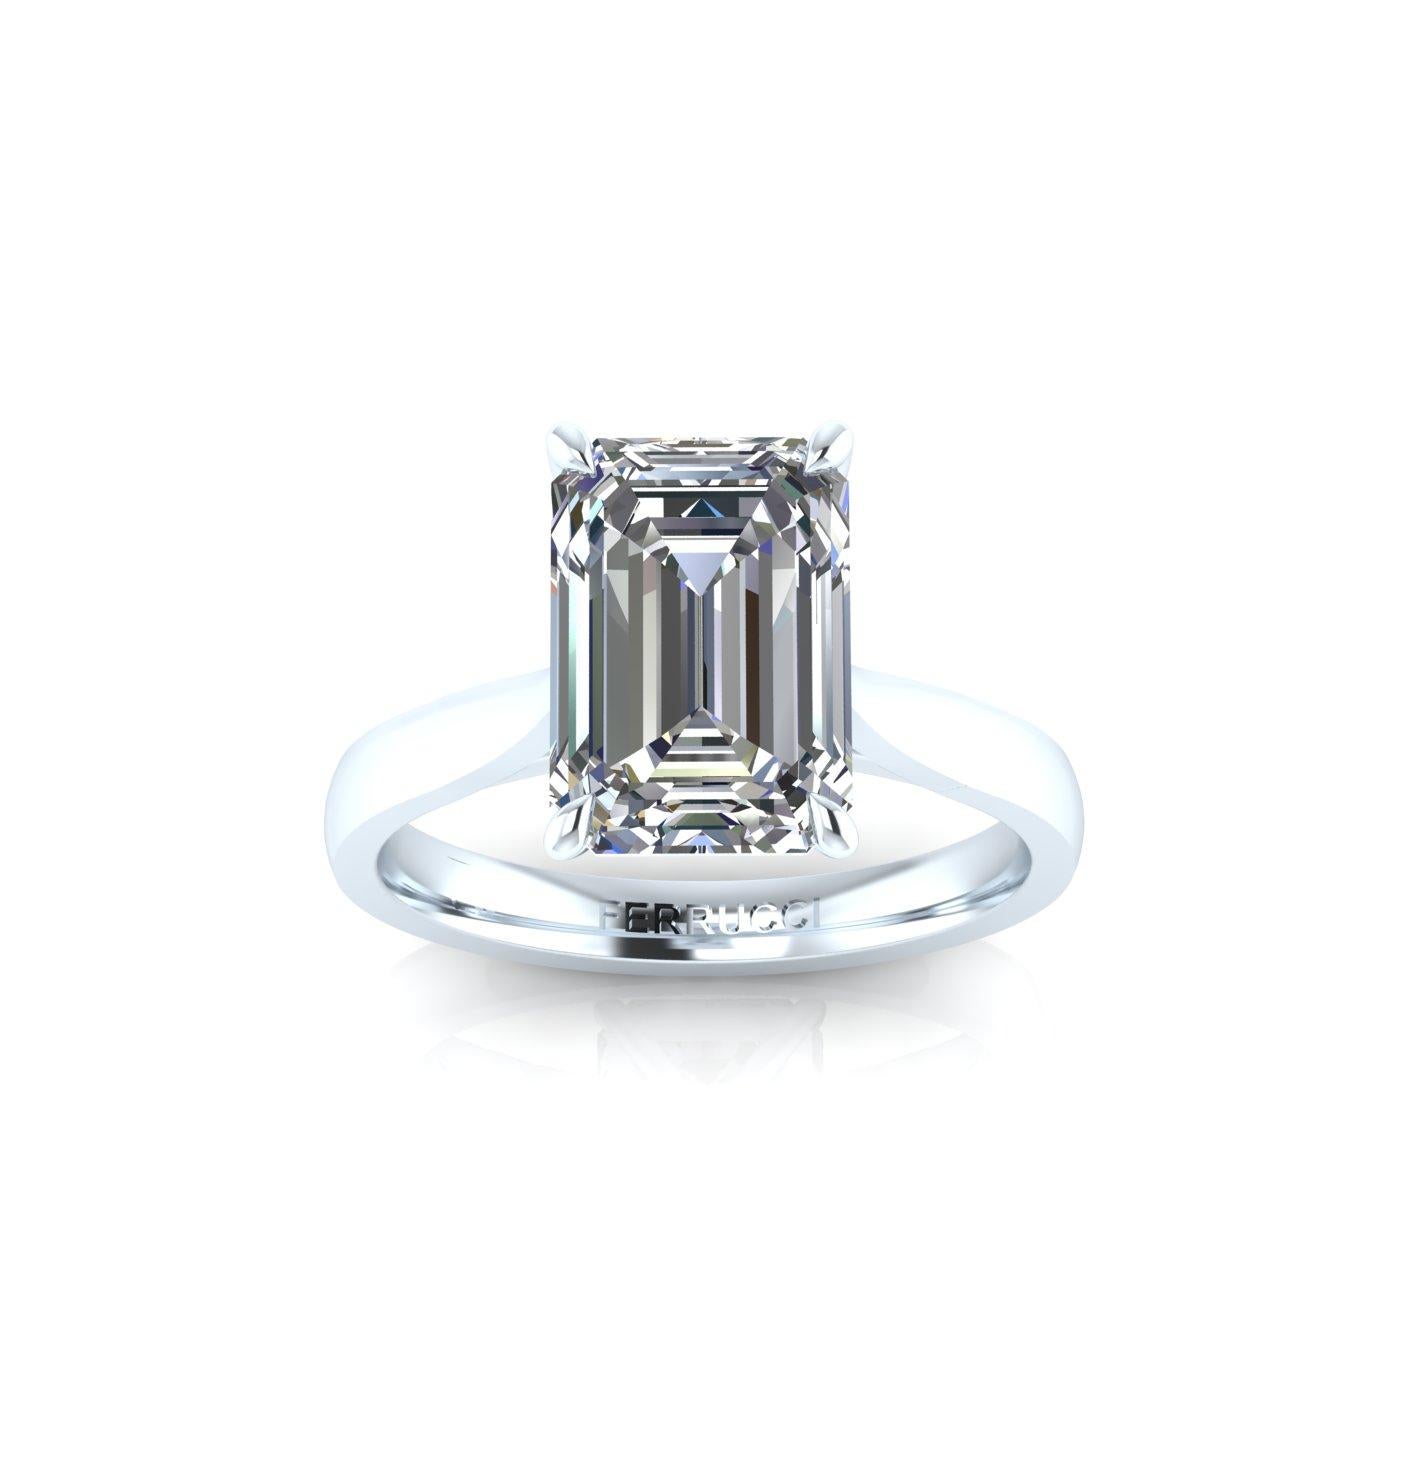 Diamant certifié GIA de 3,50 carats, couleur H,  Clarté VS2, excellentes caractéristiques, serti dans une monture sur mesure,  Bague de fiançailles solitaire en platine 950.
Entièrement personnalisable pour s'adapter à la forme et à la taille de